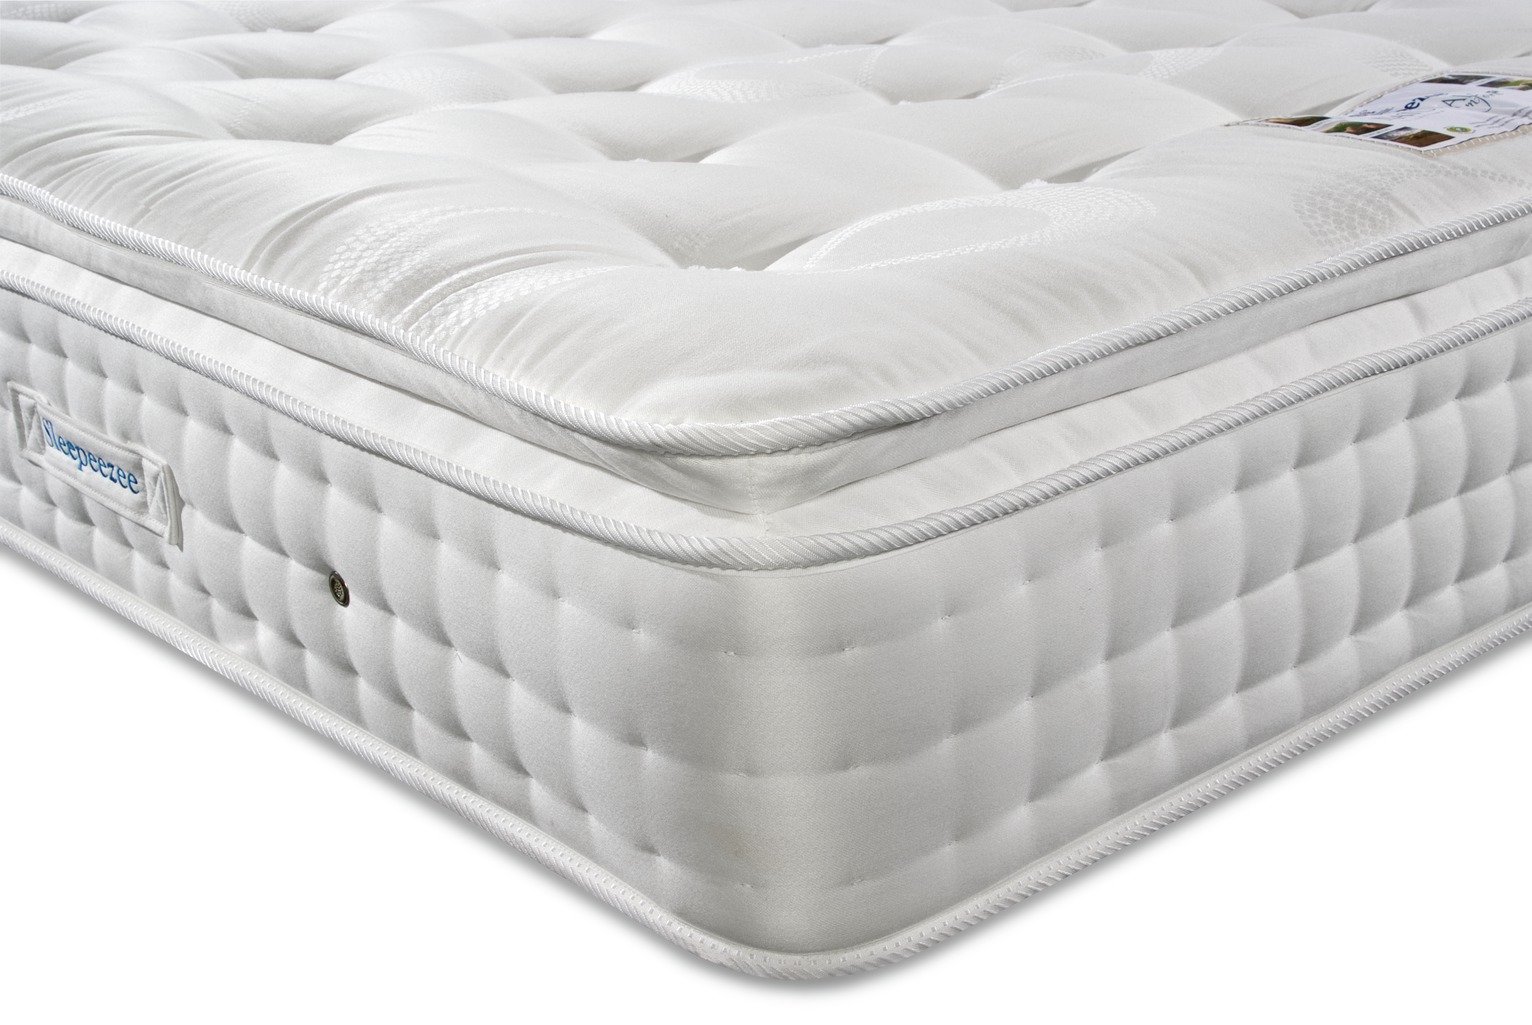 superking pillow top mattresses